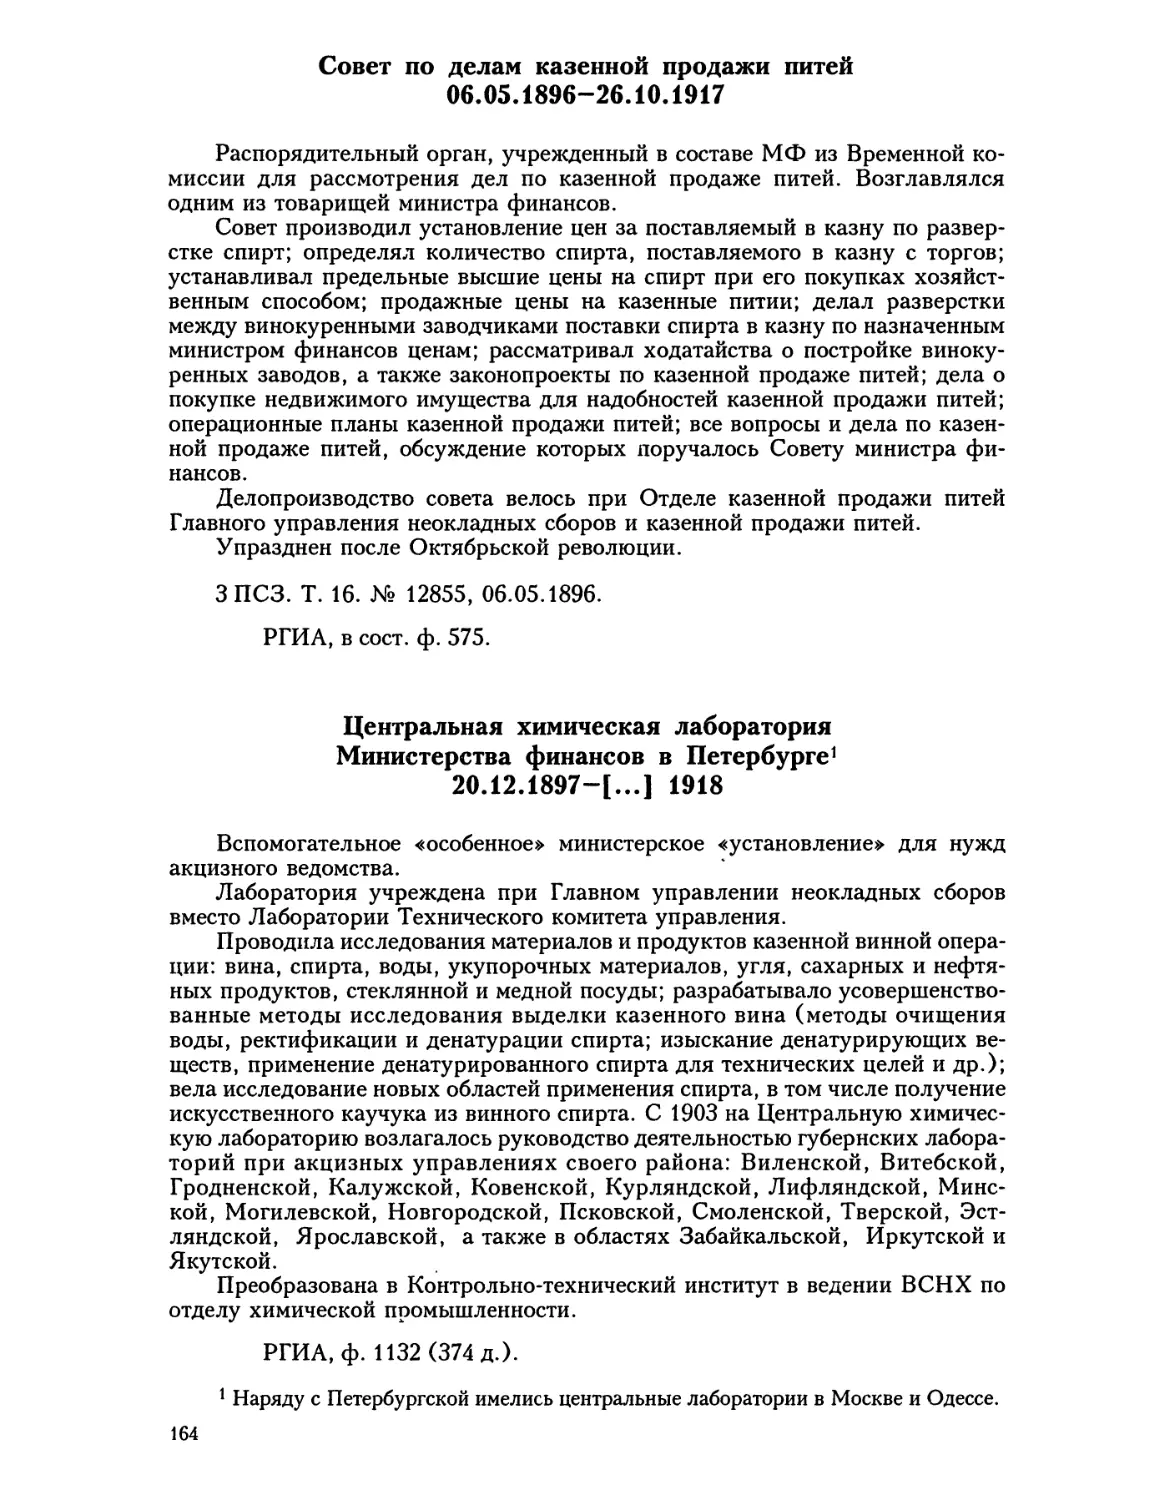 Совет по делам казенной продажи питей
Центральная химическая лаборатория Министерства финансов в Петербурге